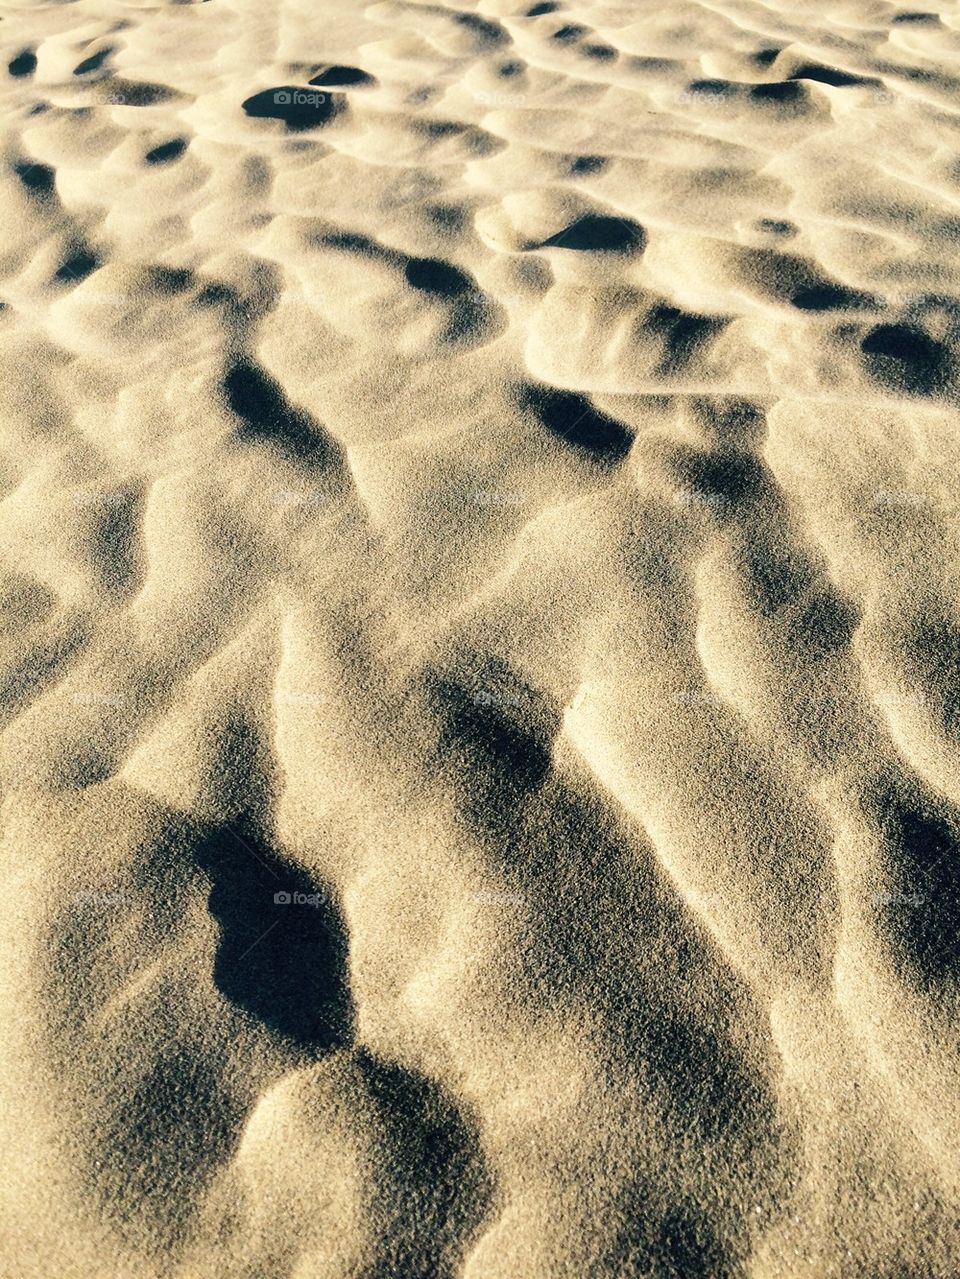 Sunlight on sand